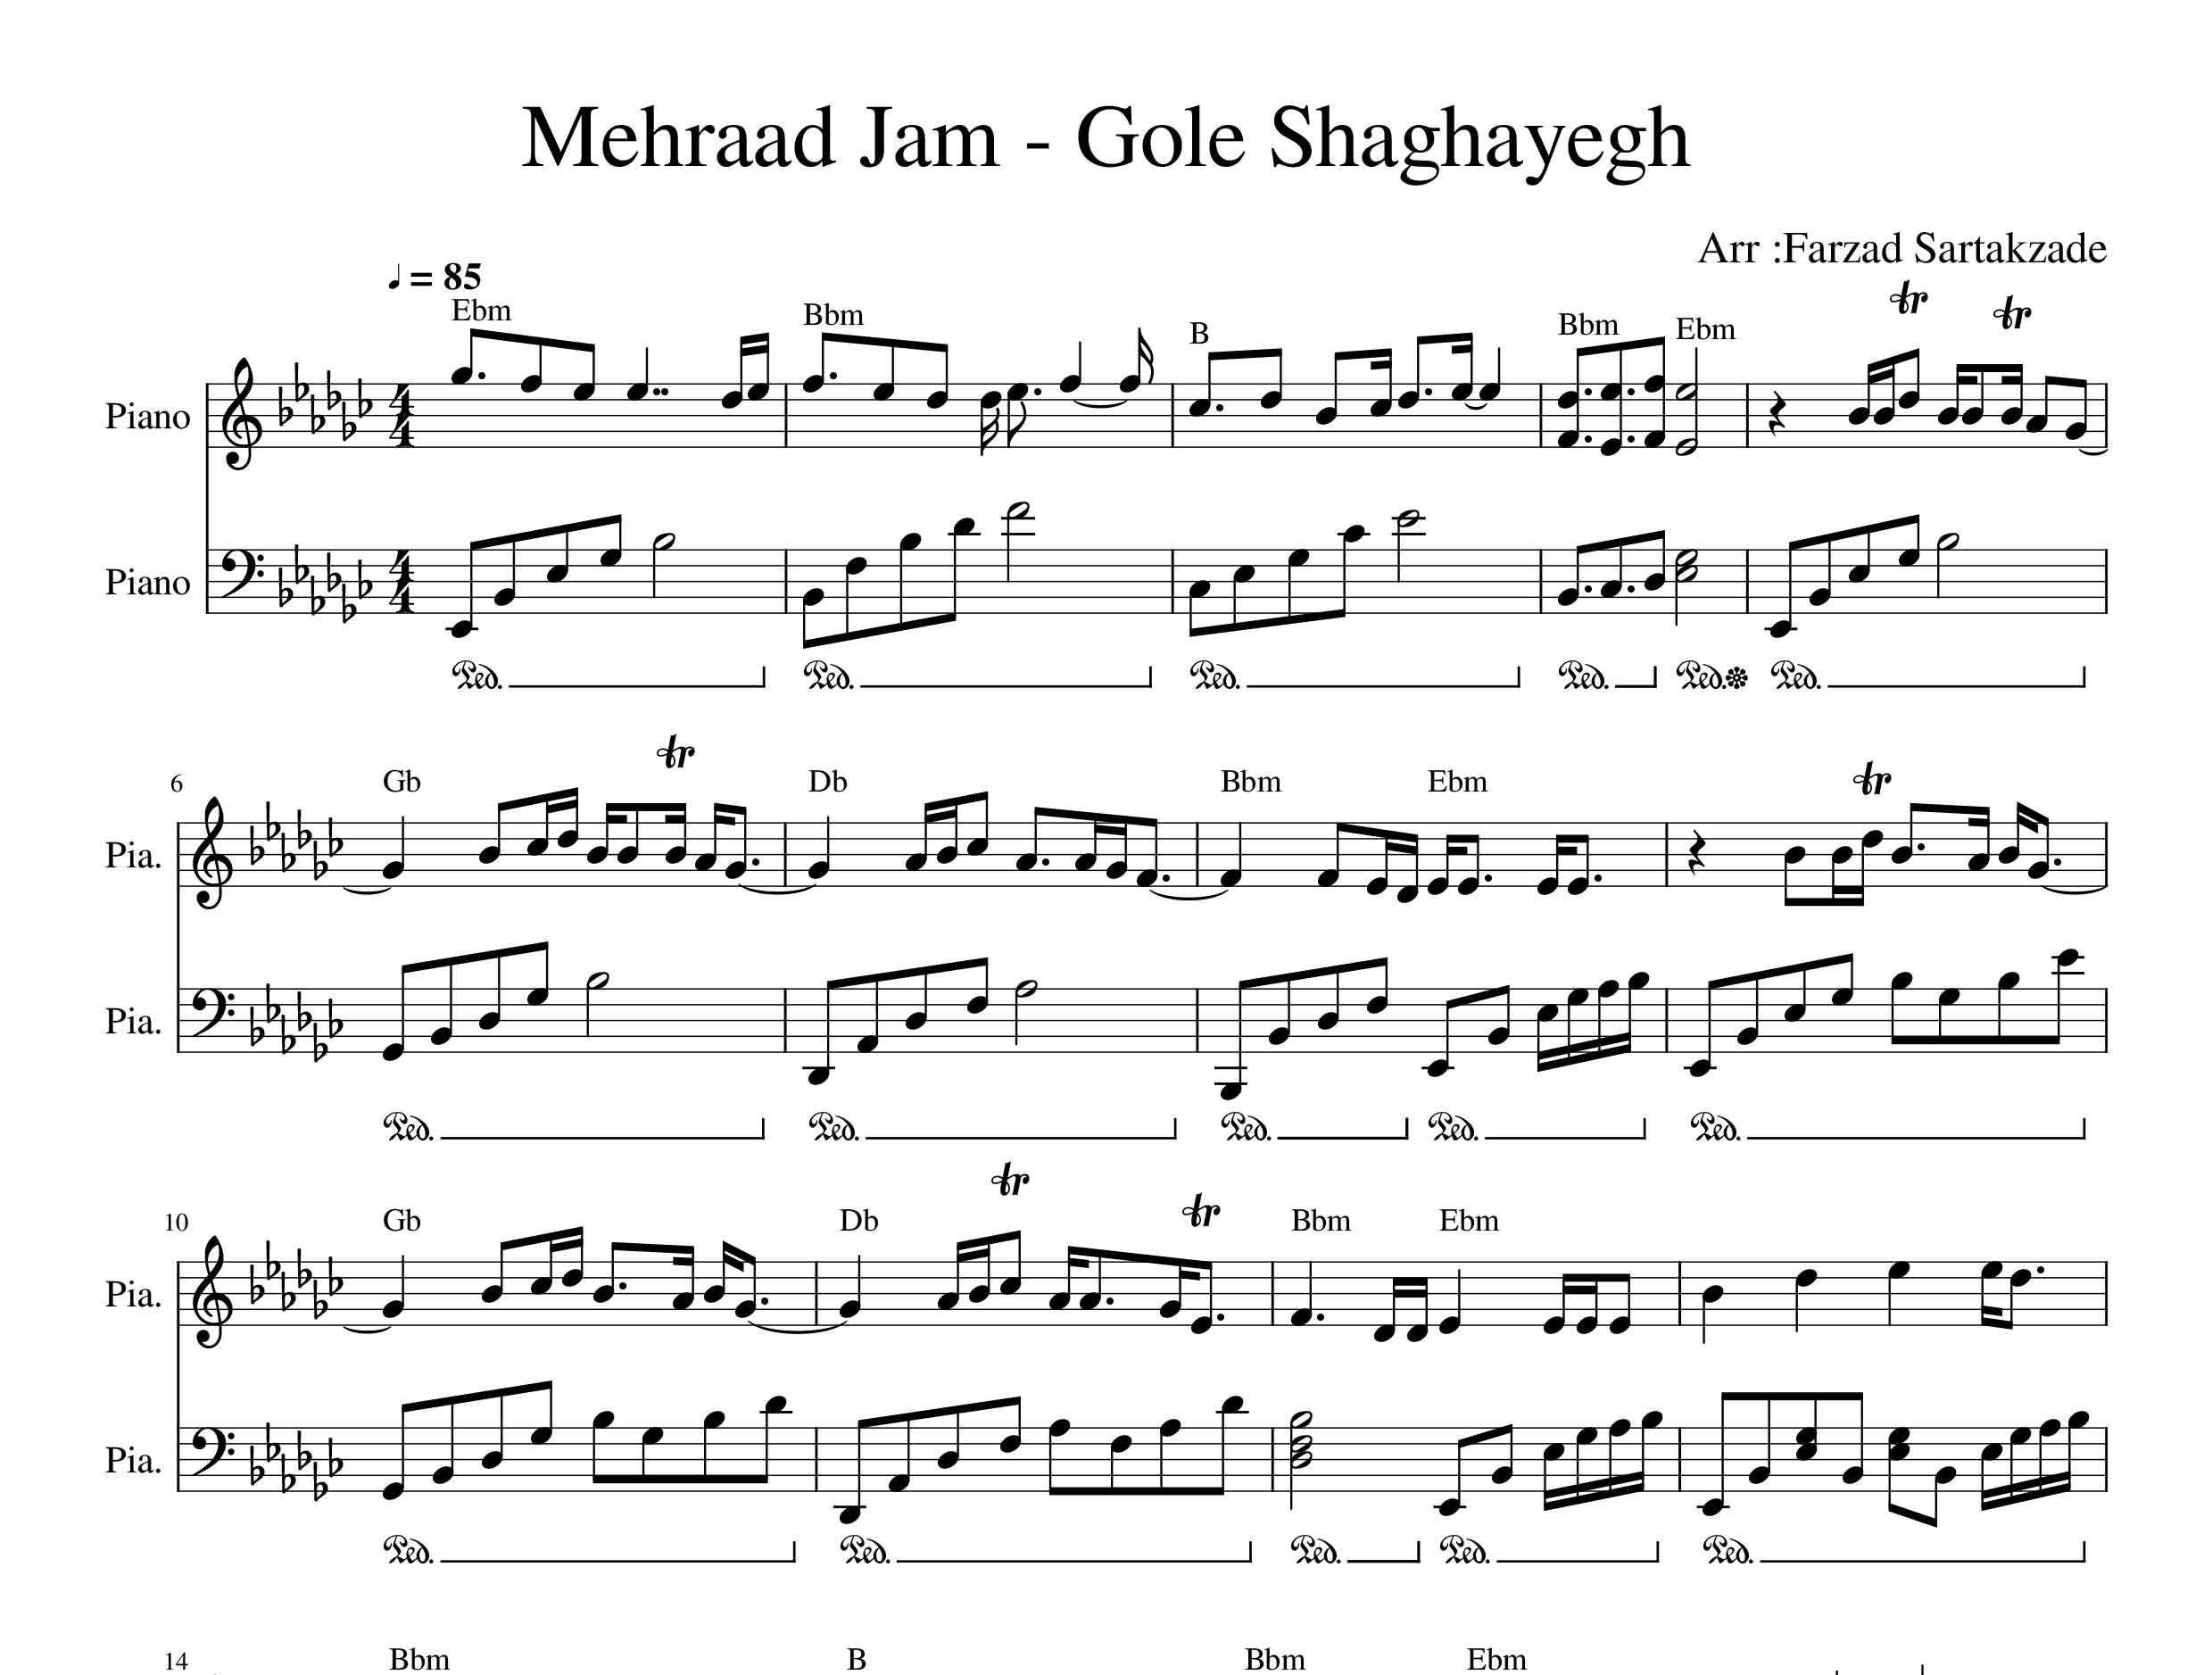 نت پیانو آهنگ گل شقایق از مهراد جم همراه با آکورد